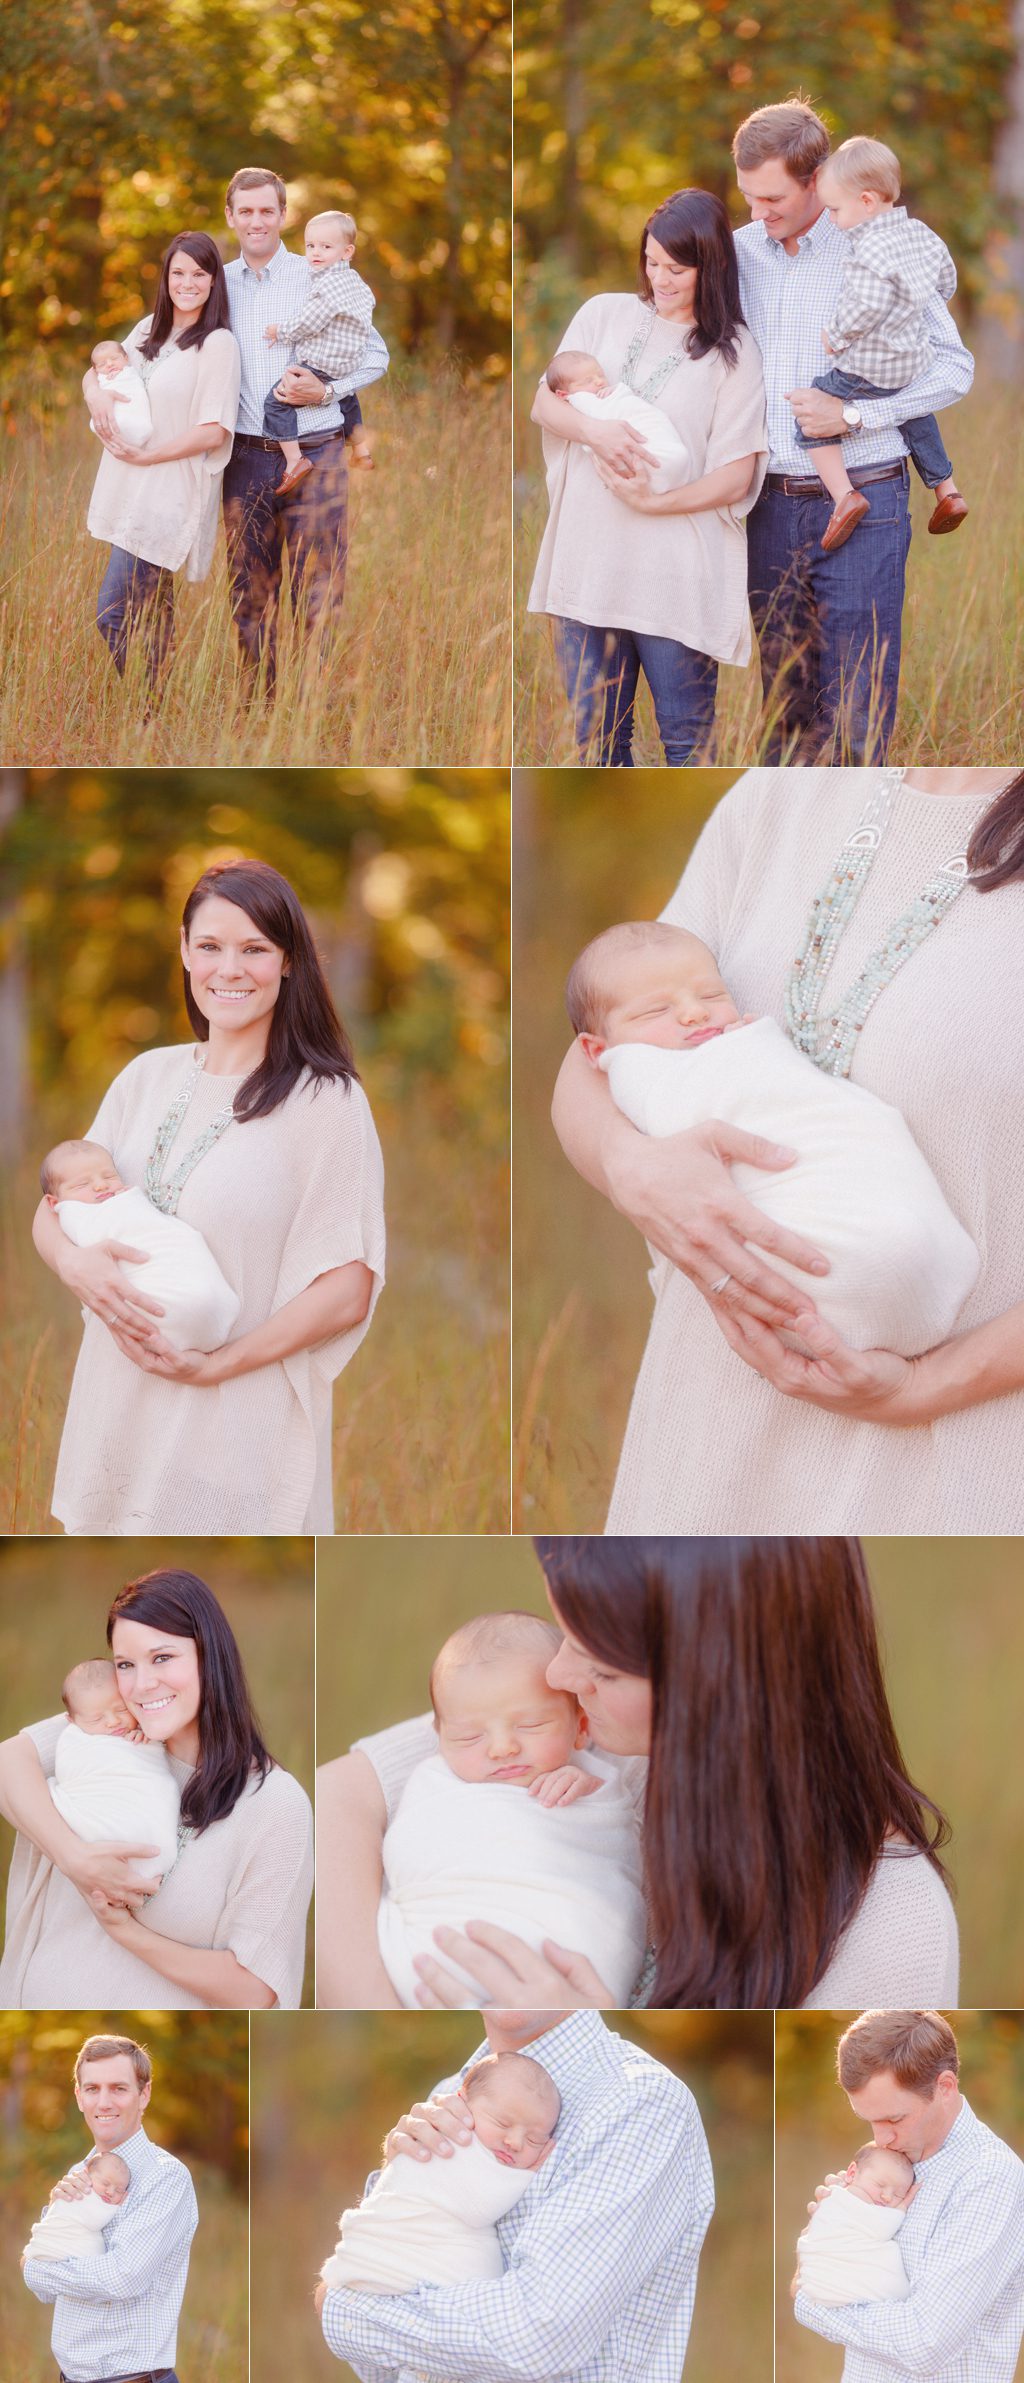 Outdoor newborn professional photos in field in Oconee County, GA.